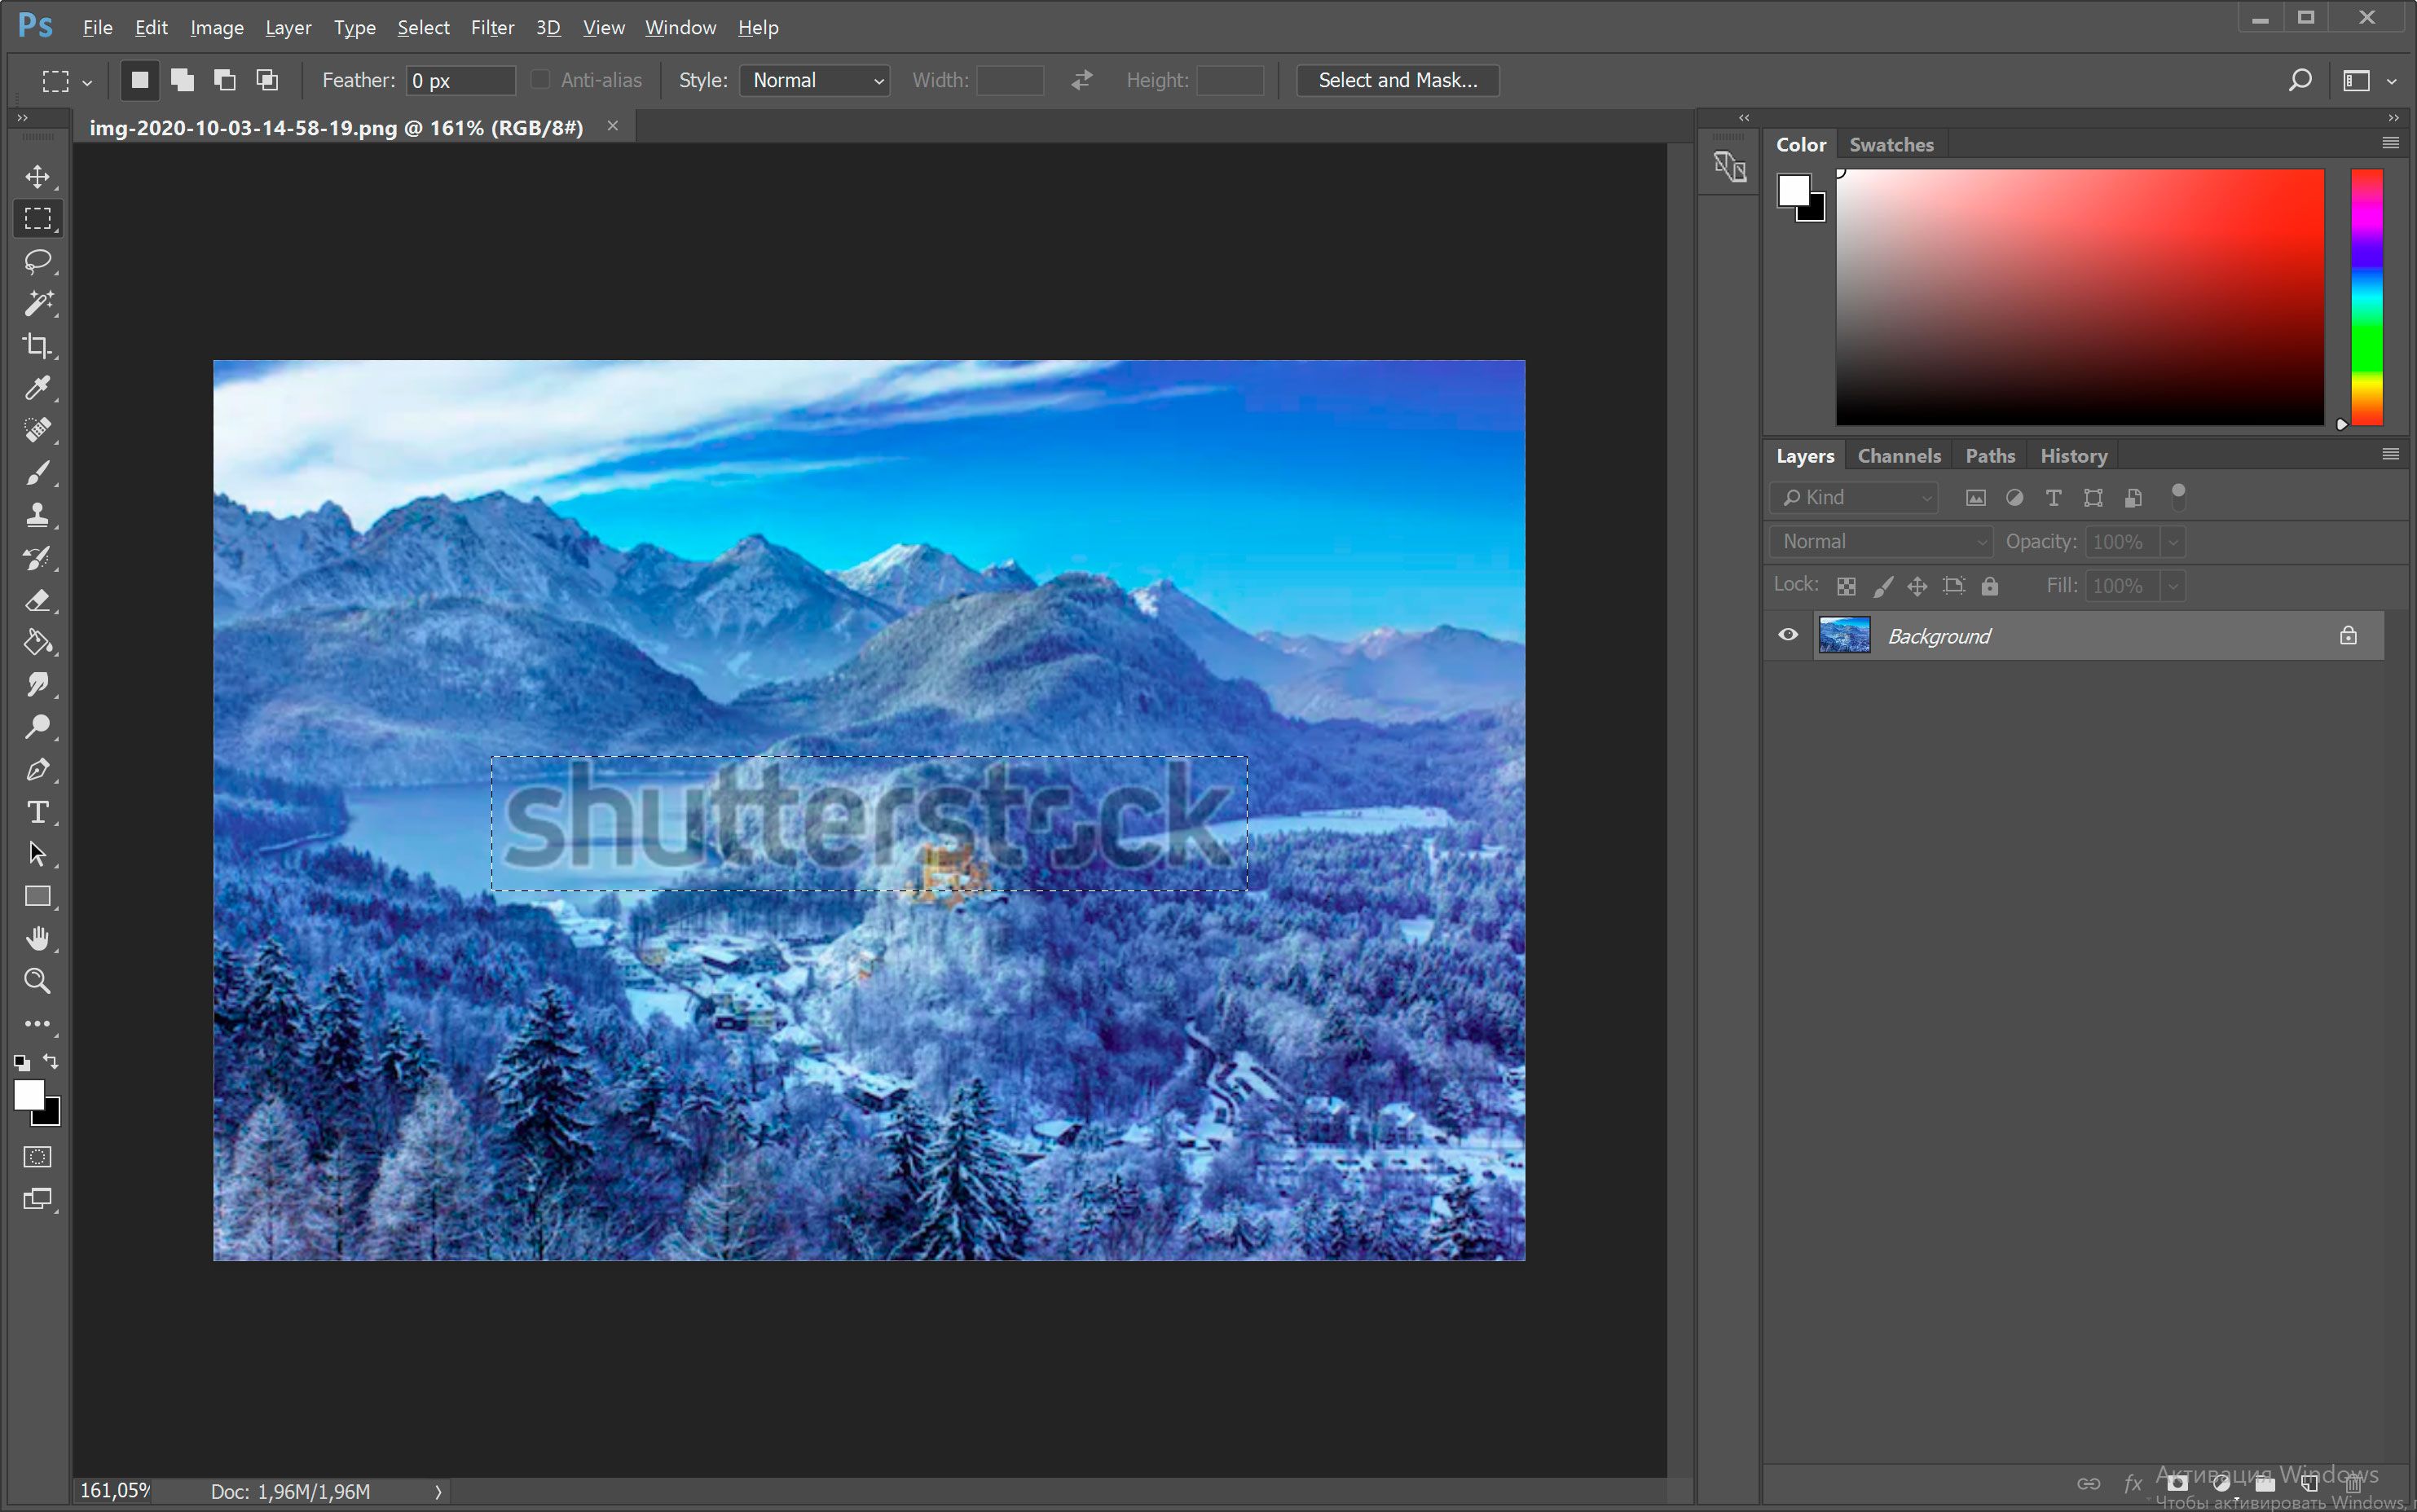 Otwórz zdjęcie ze znakiem wodnym Shutterstock w programie Photoshop..